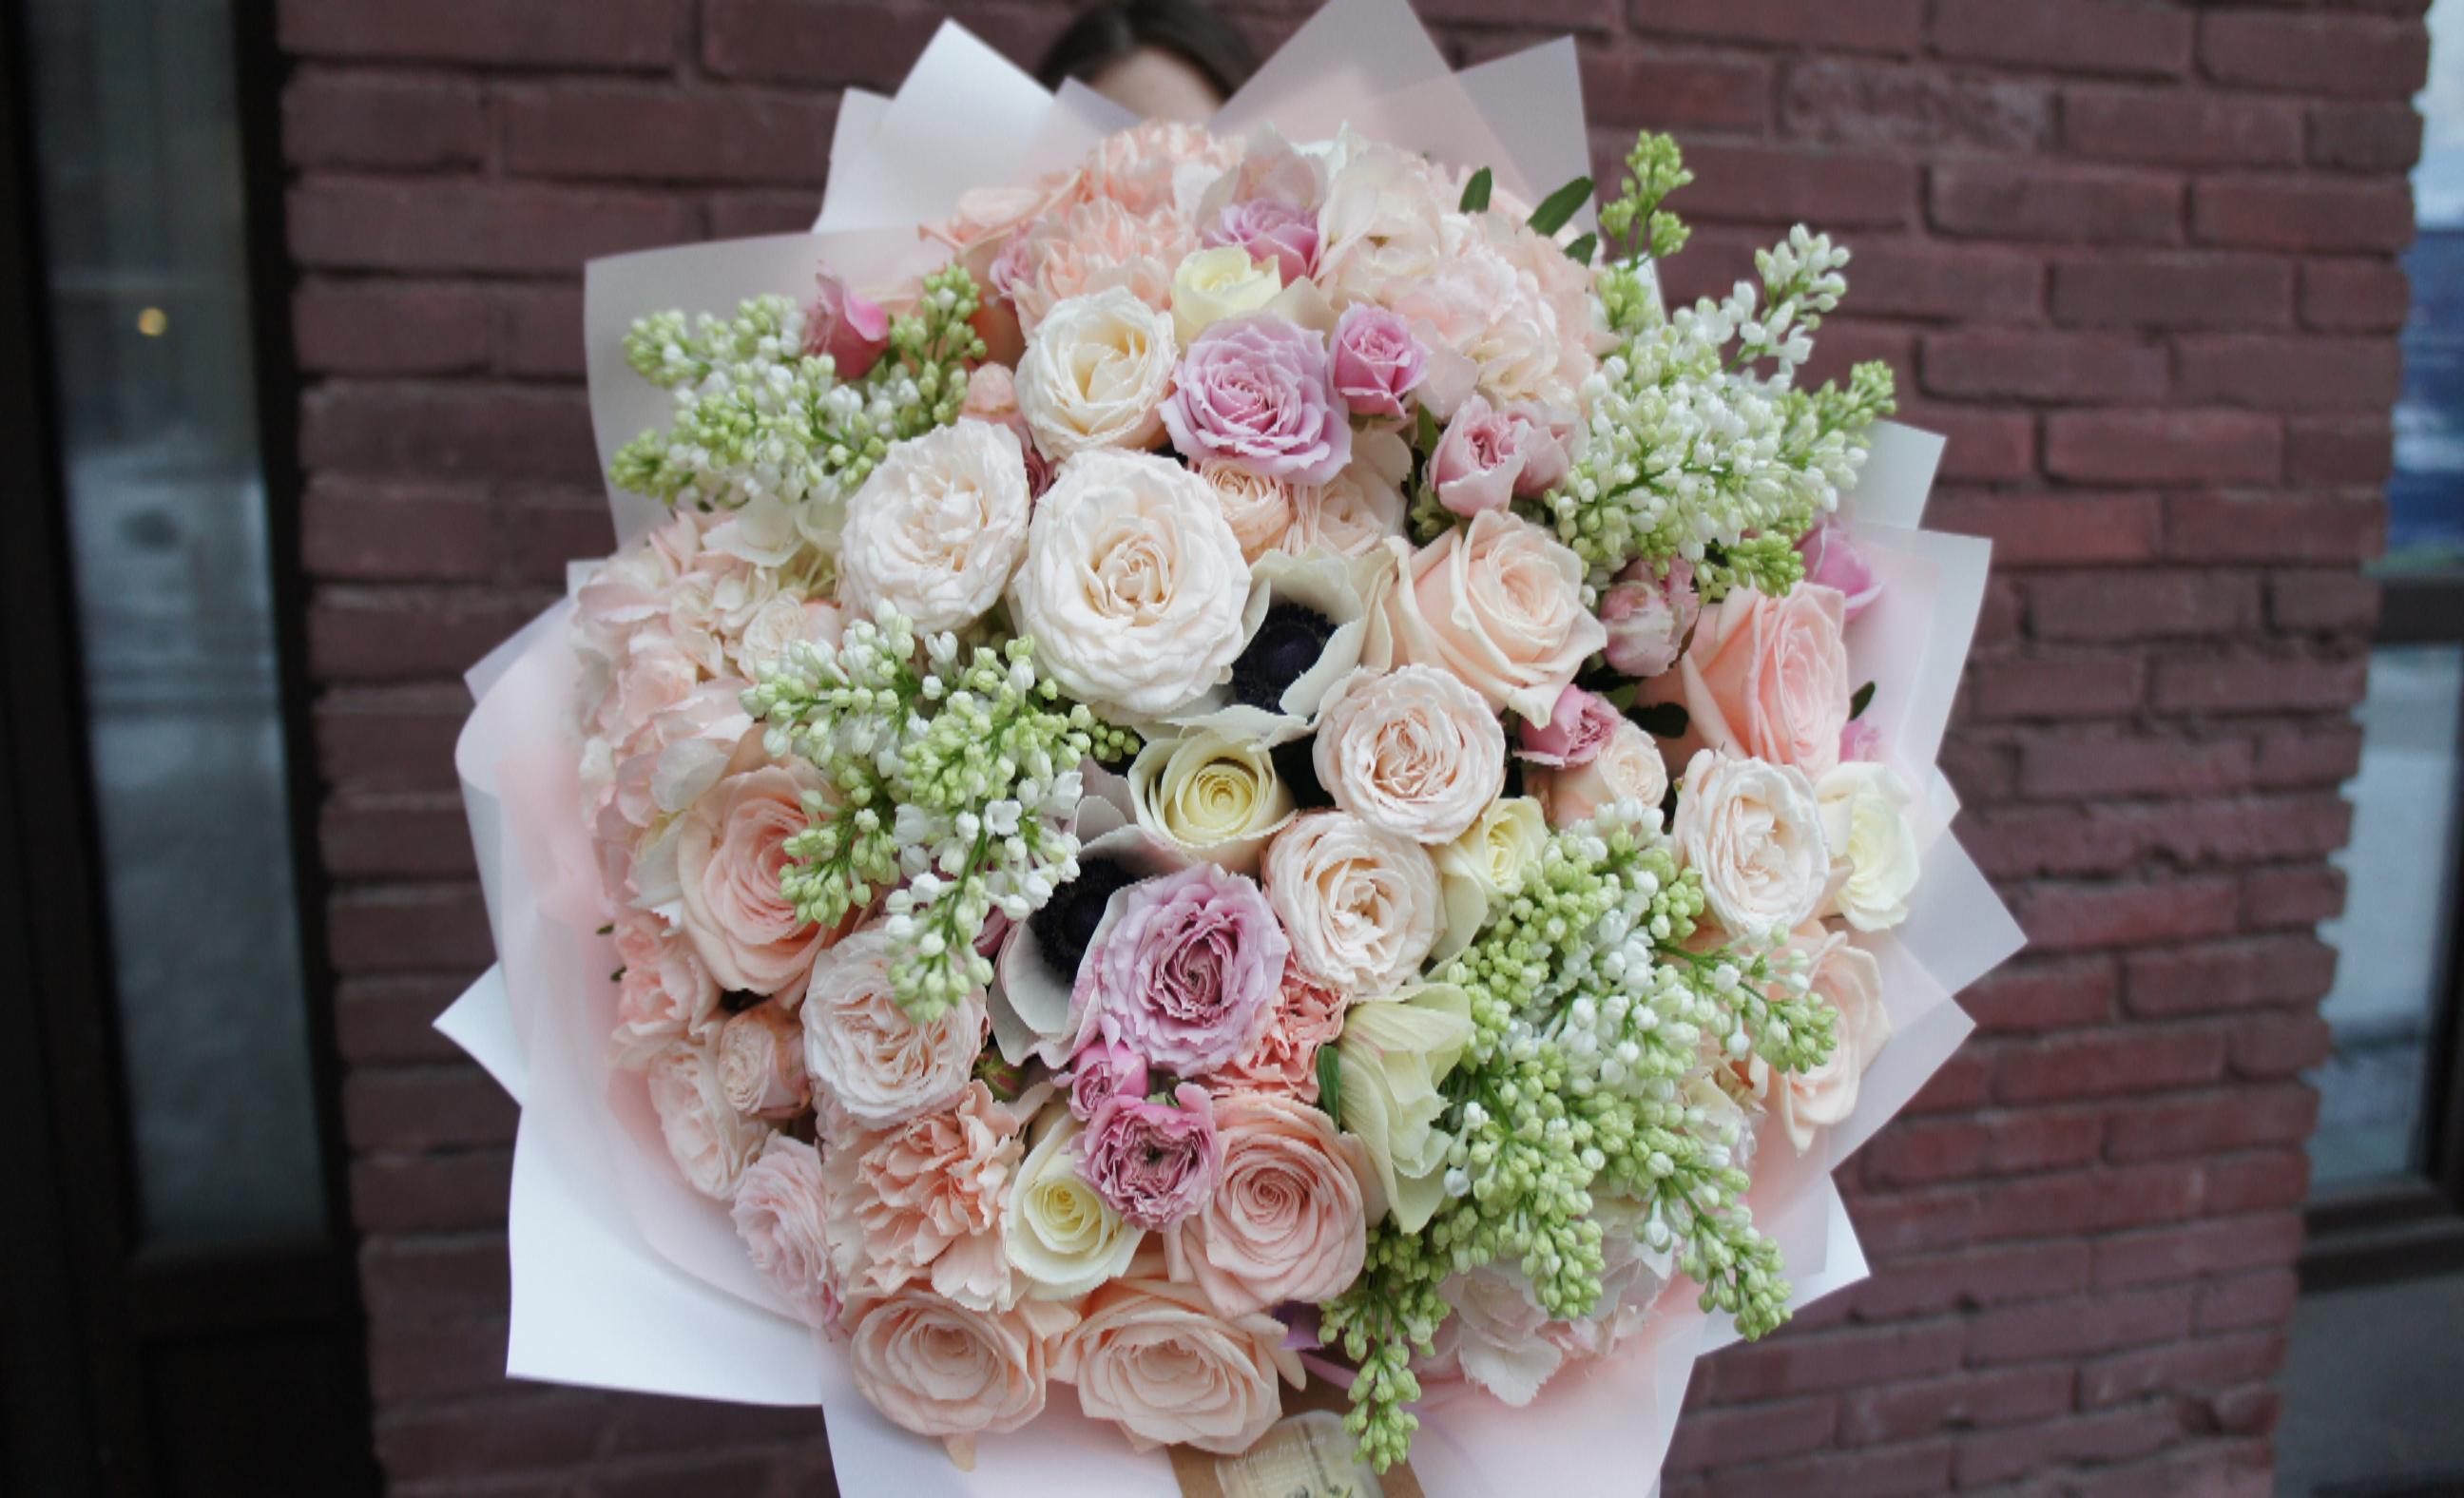 Купить букет / цветы Вивара в Москве с доставкой по отличной цене